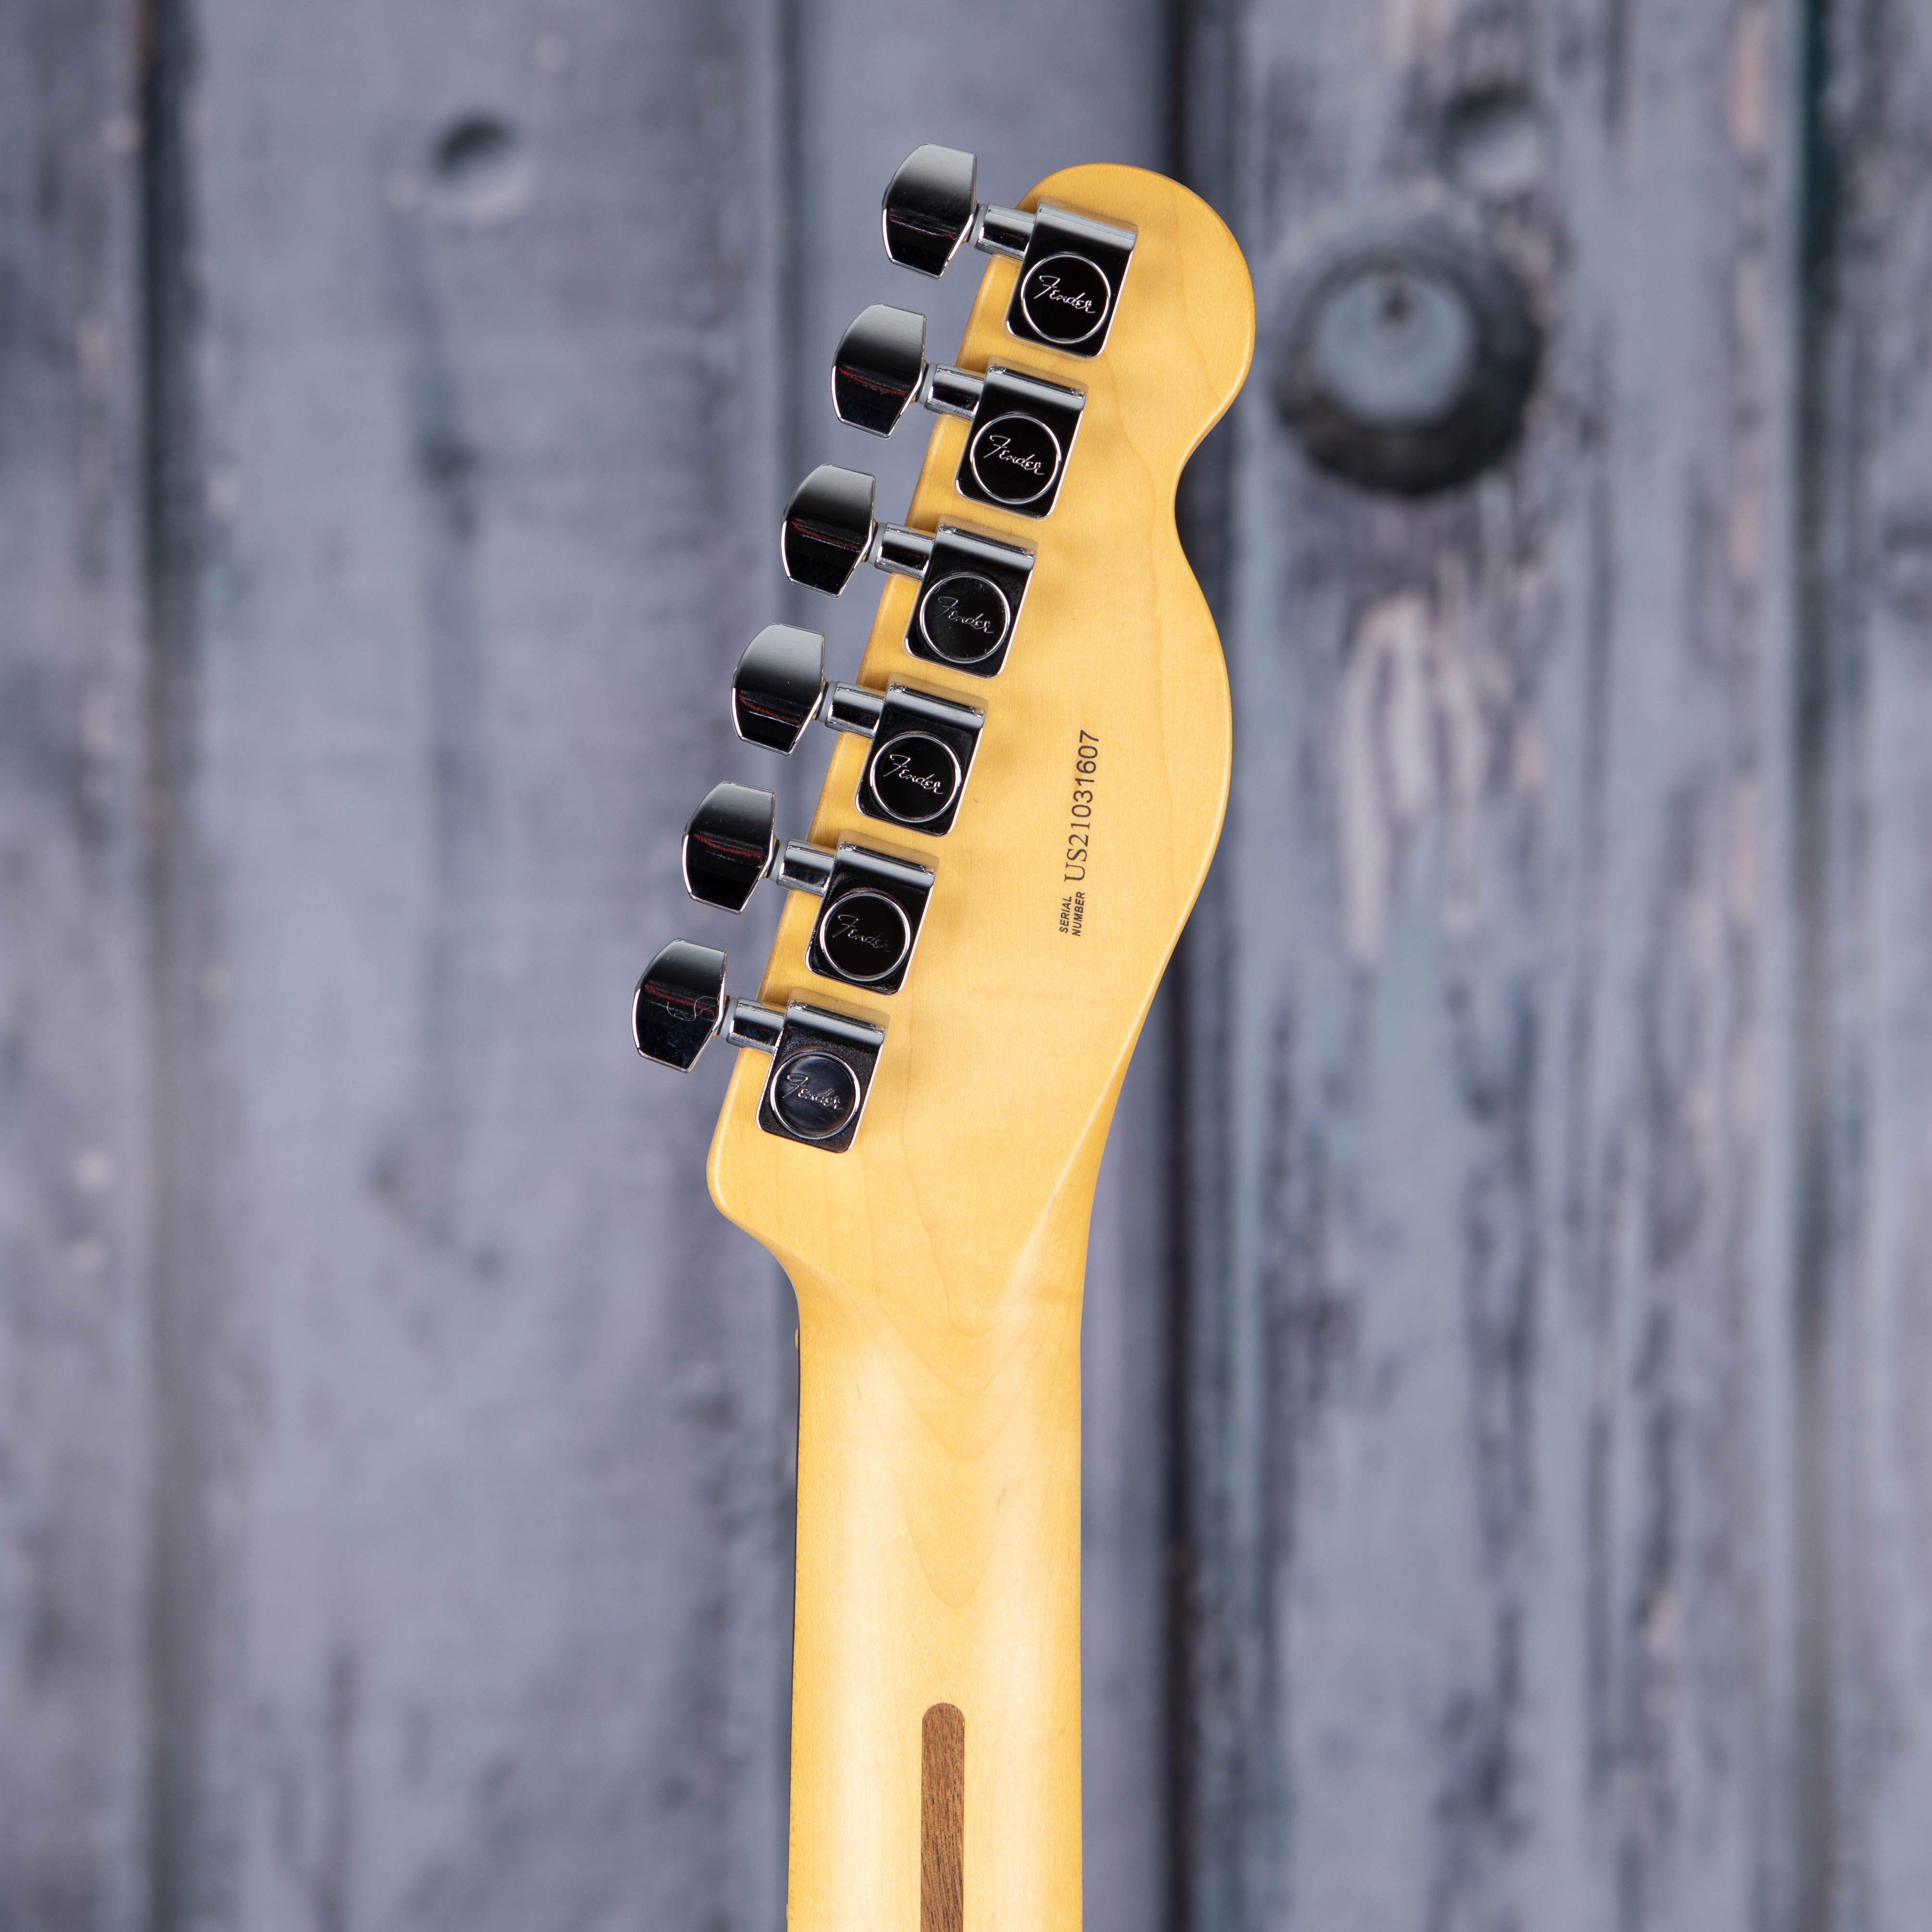 Fender American Professional II Telecaster Left-Handed Electric Guitar, 3-Color Sunburst, back headstock